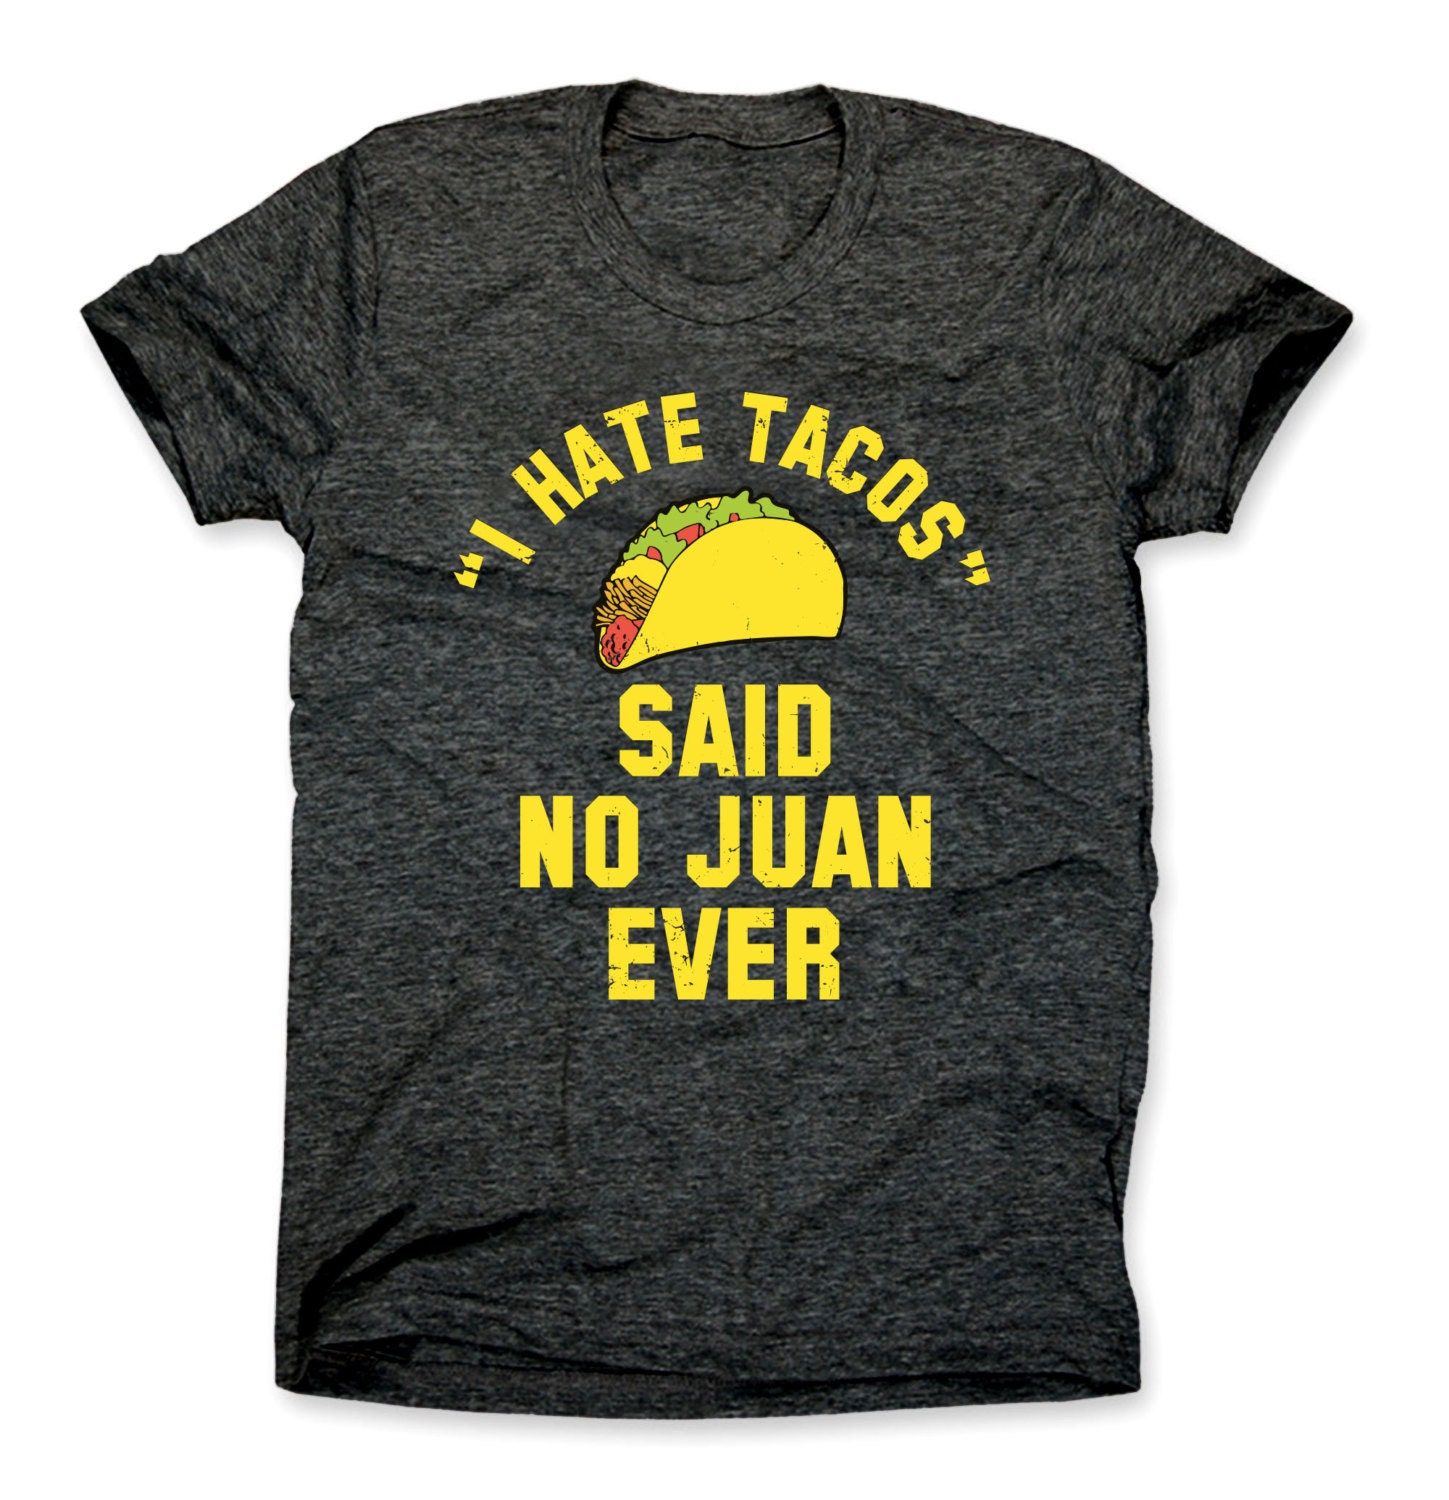 I Hate Tacos Said No Juan Ever Shirt I Hate Tacos Said No